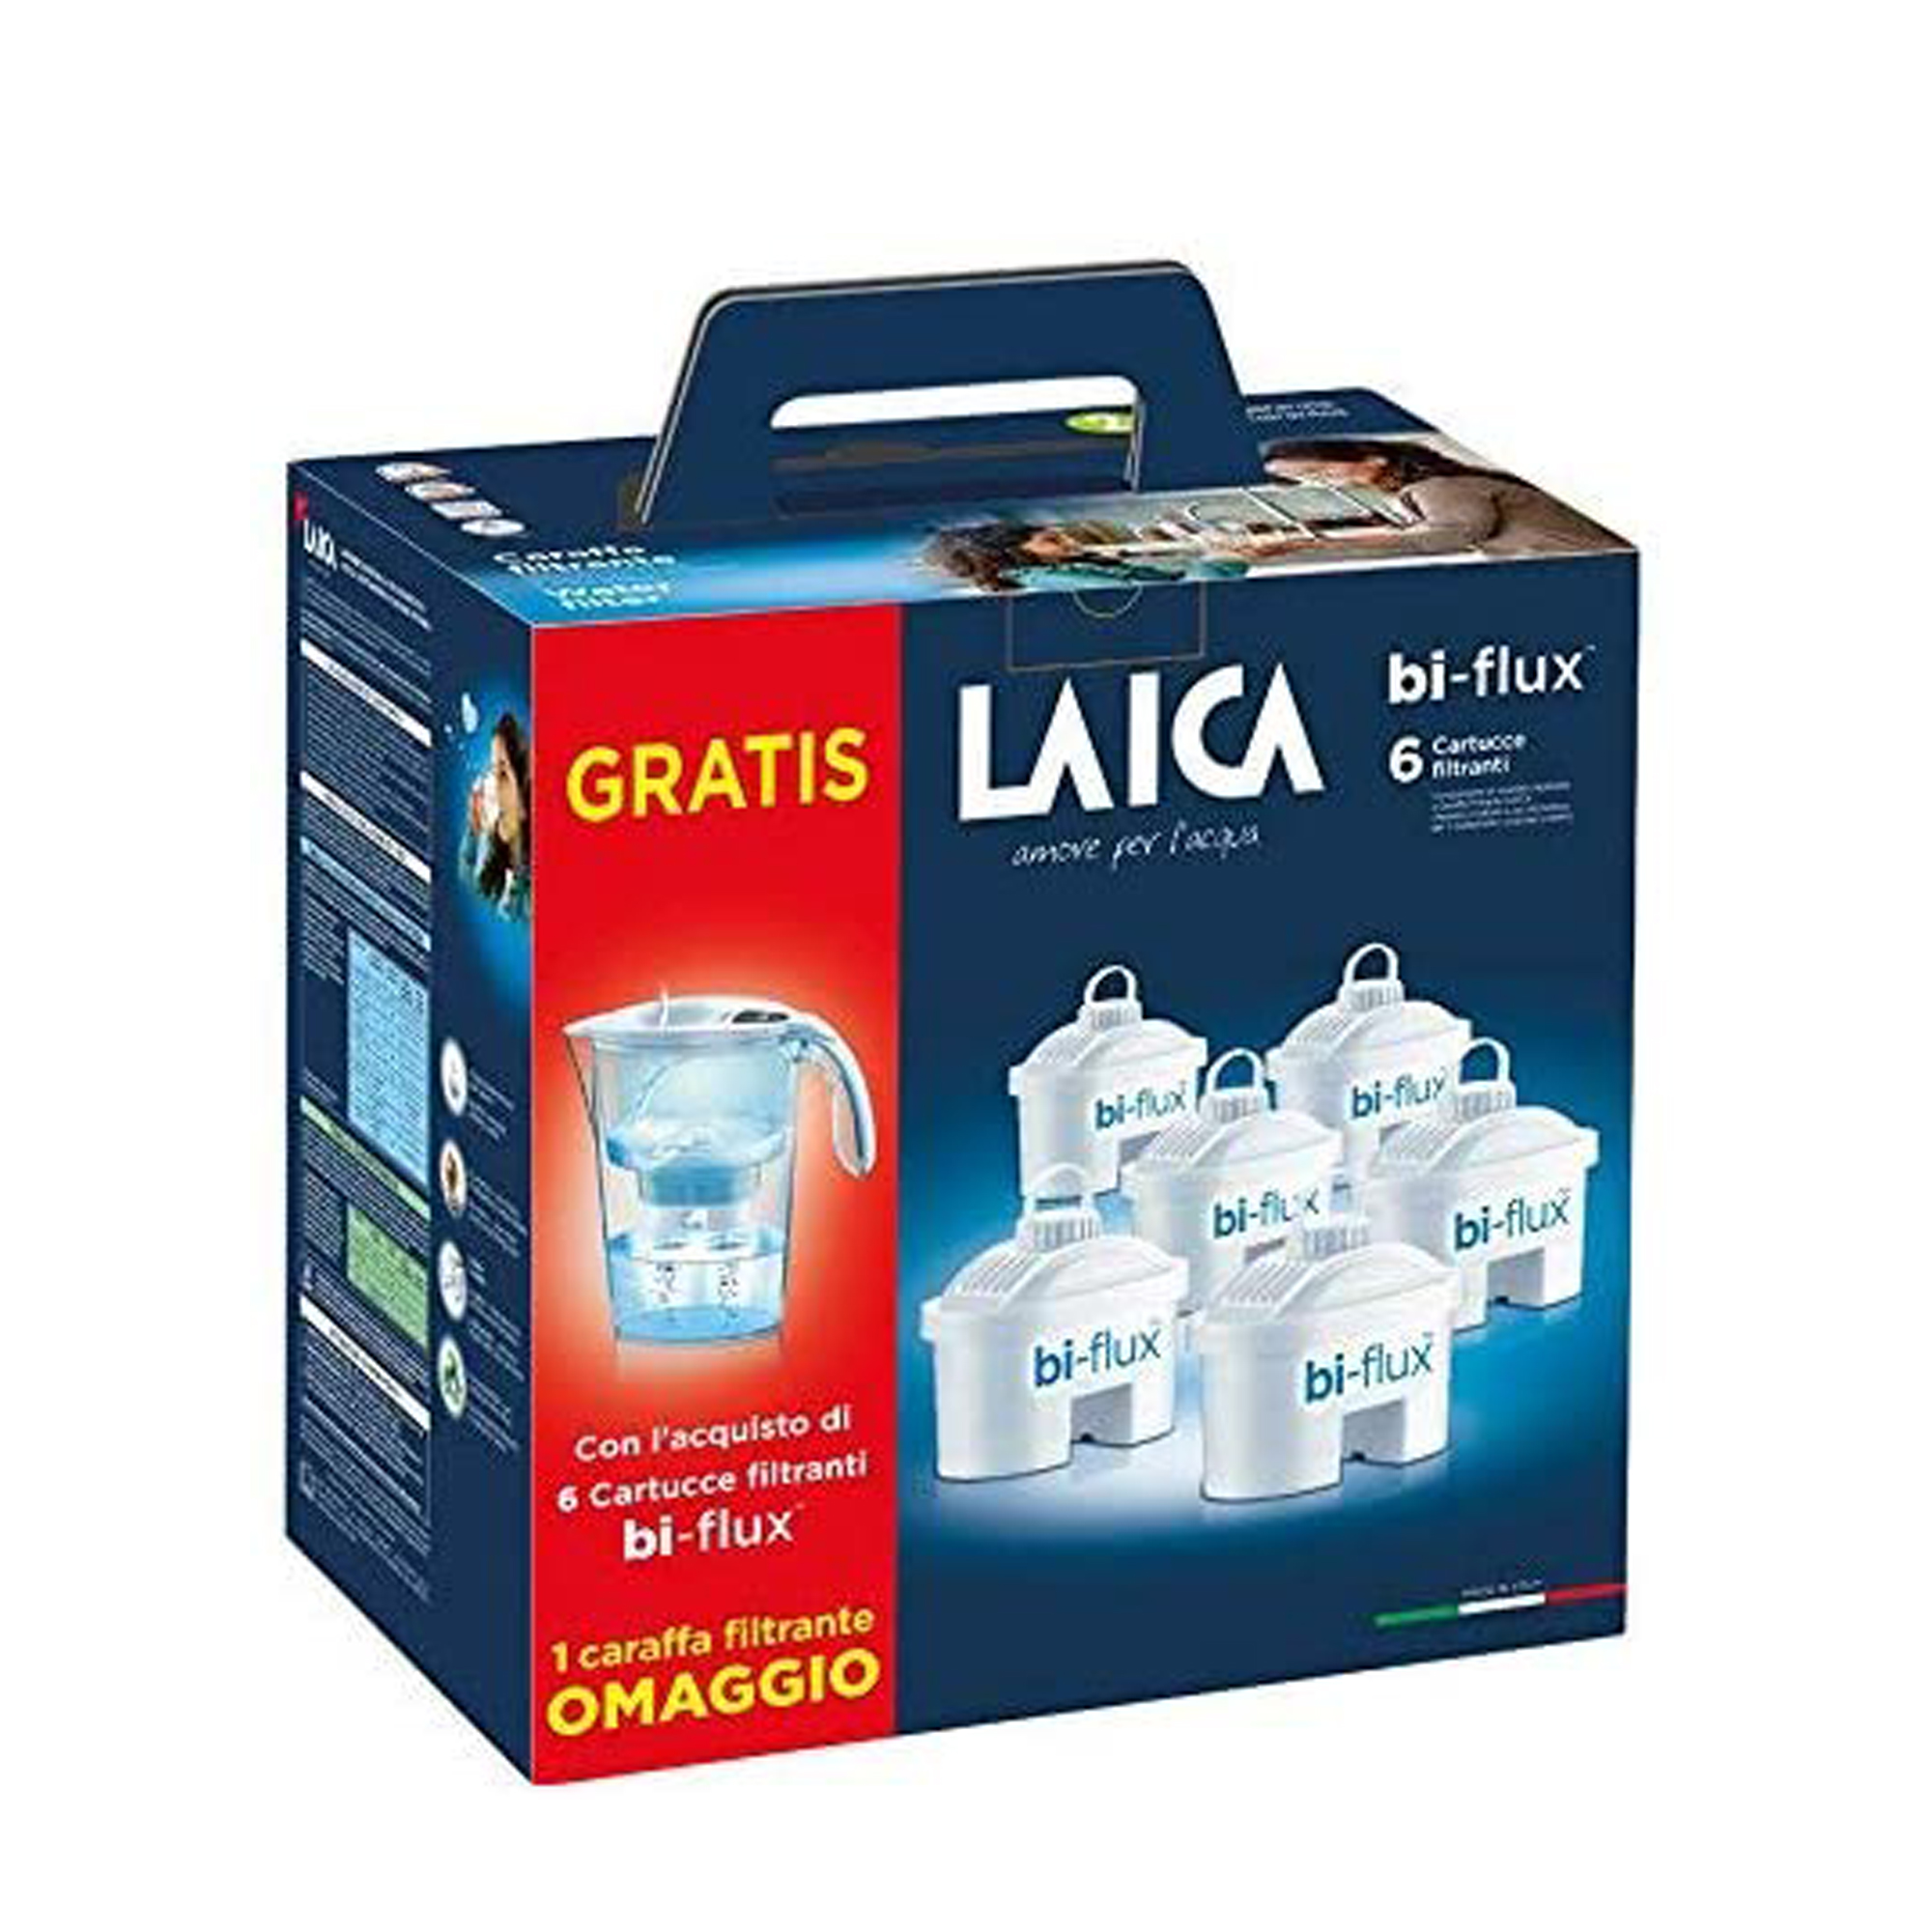 LA271 LAICA Water filter, Blanco